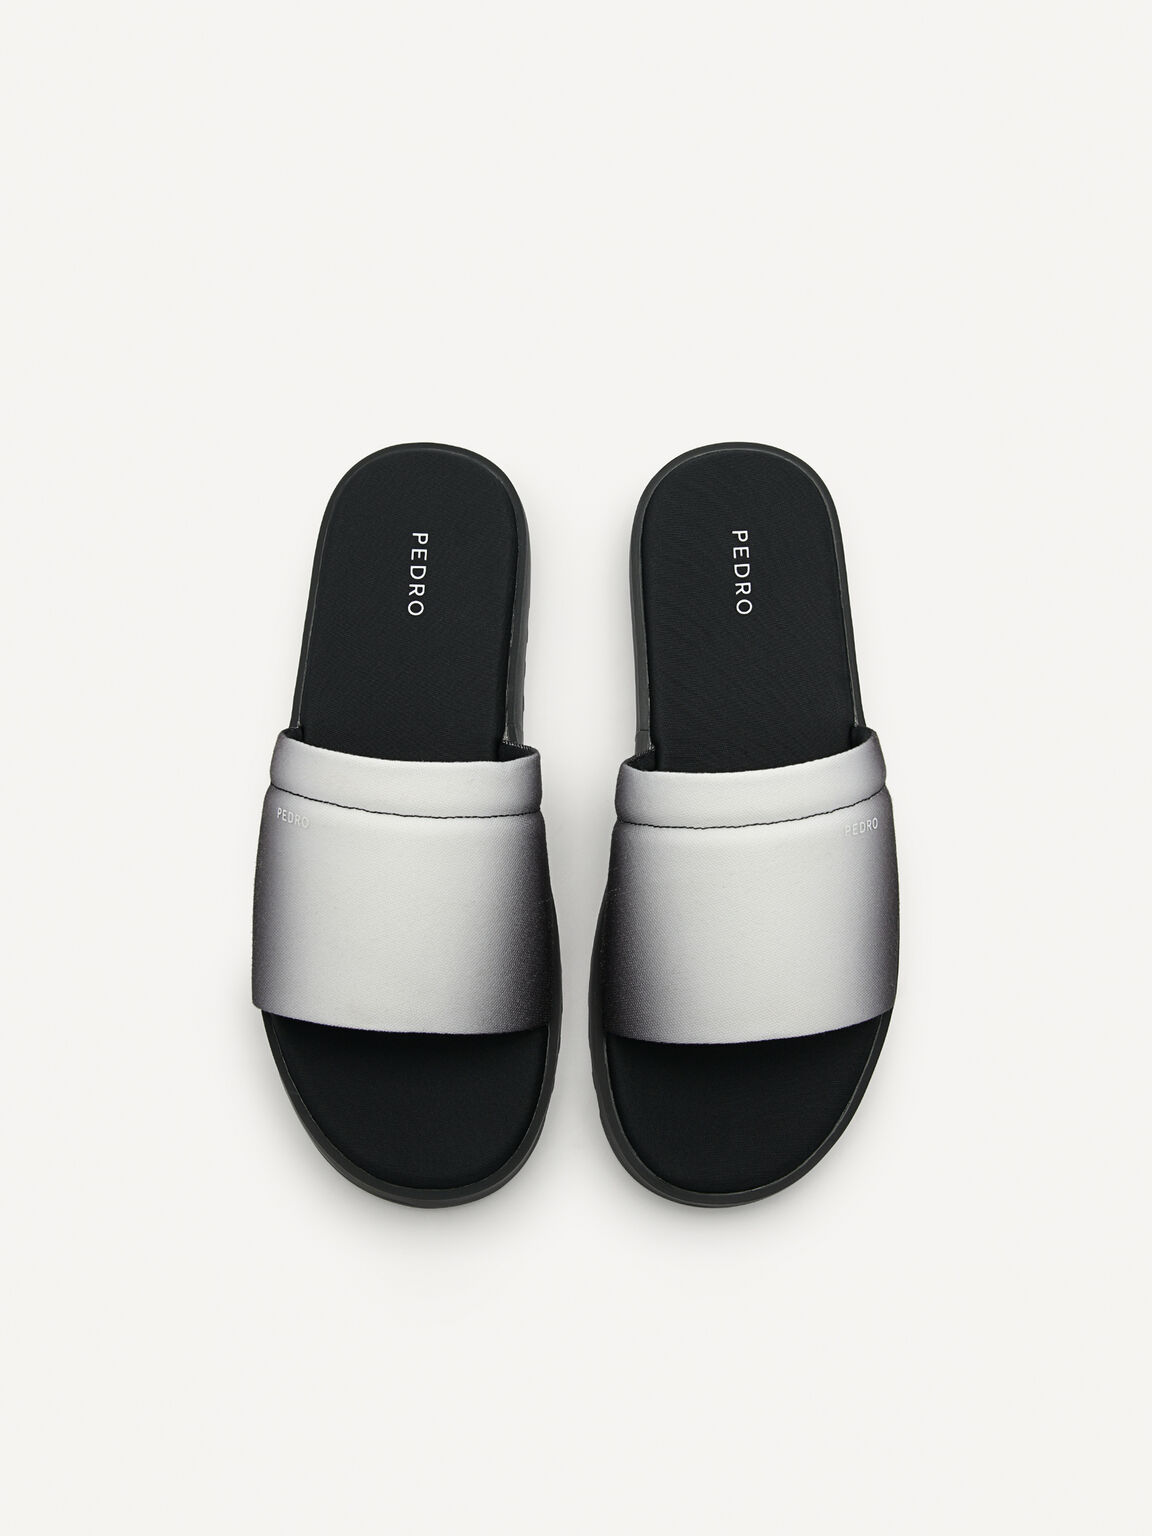 Canvas Slide Sandals, Black